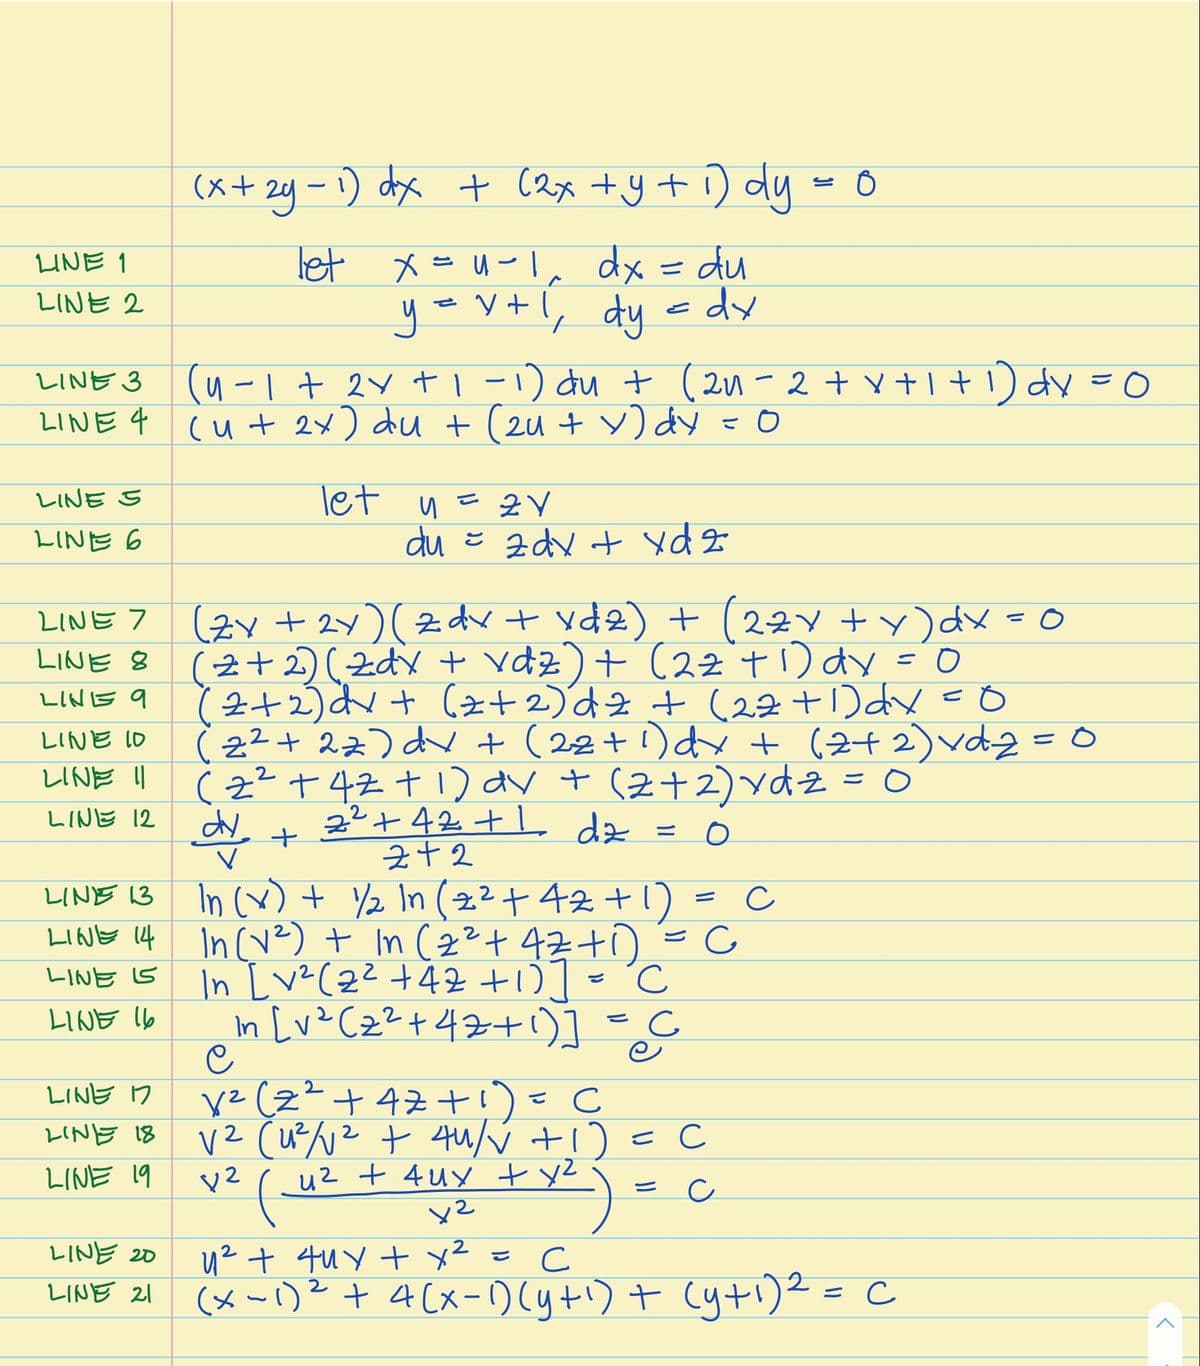 (x+ 2y - 1) dx + (2x +y + ) dy = Ô
let x=u-1, dx = du
- v+l, dy edy
UNE 1
LINE 2
で
(4-1+ 2Y t1-1) du t (2u-2+ v +1+1) dy =0
cut 2x) du + (2u + v) dy =0
しINE 3
LINE 4
Tet y = 2 Y
du こ 2dy + yd2
レINE S
LINE 6
(Zy + 2Y)zdv + yd2) t (22Y +)dx=0
LINE 8 (2+2zd + vdz)+ (22 t1) dy = 0
(2+2)dv+ (2z+2)d2+ (22 +1)dx =O
(2?+ 27) dv + (22+1)dy + (2+ 2)vdz =0
(z² +42+1) av t (2+2)ydz =0
2²+42 + dz
LINE 7
%3D
LINE 9
LINE 10
レINE |
LINE 12
三
In (x) + Y2 In (2²+42 +1)
LIQNE 14 In(vz) + In (2²+4z+i)
In Lve(22 +42 +0]= °C
In [v? Cz²+42t1)]
LINE 13
ご
LINE 5
LINE lb
y2 (z²+ 47+!)=C
LINE n
LINE 18
こ C
( uz t quy t y) = c
LINE 19
u² + 4uy x² = C
(メー)+ 4Cx-0(yt)+ Cyti)2- c
レINE 20
2.
こ
レINE 21
